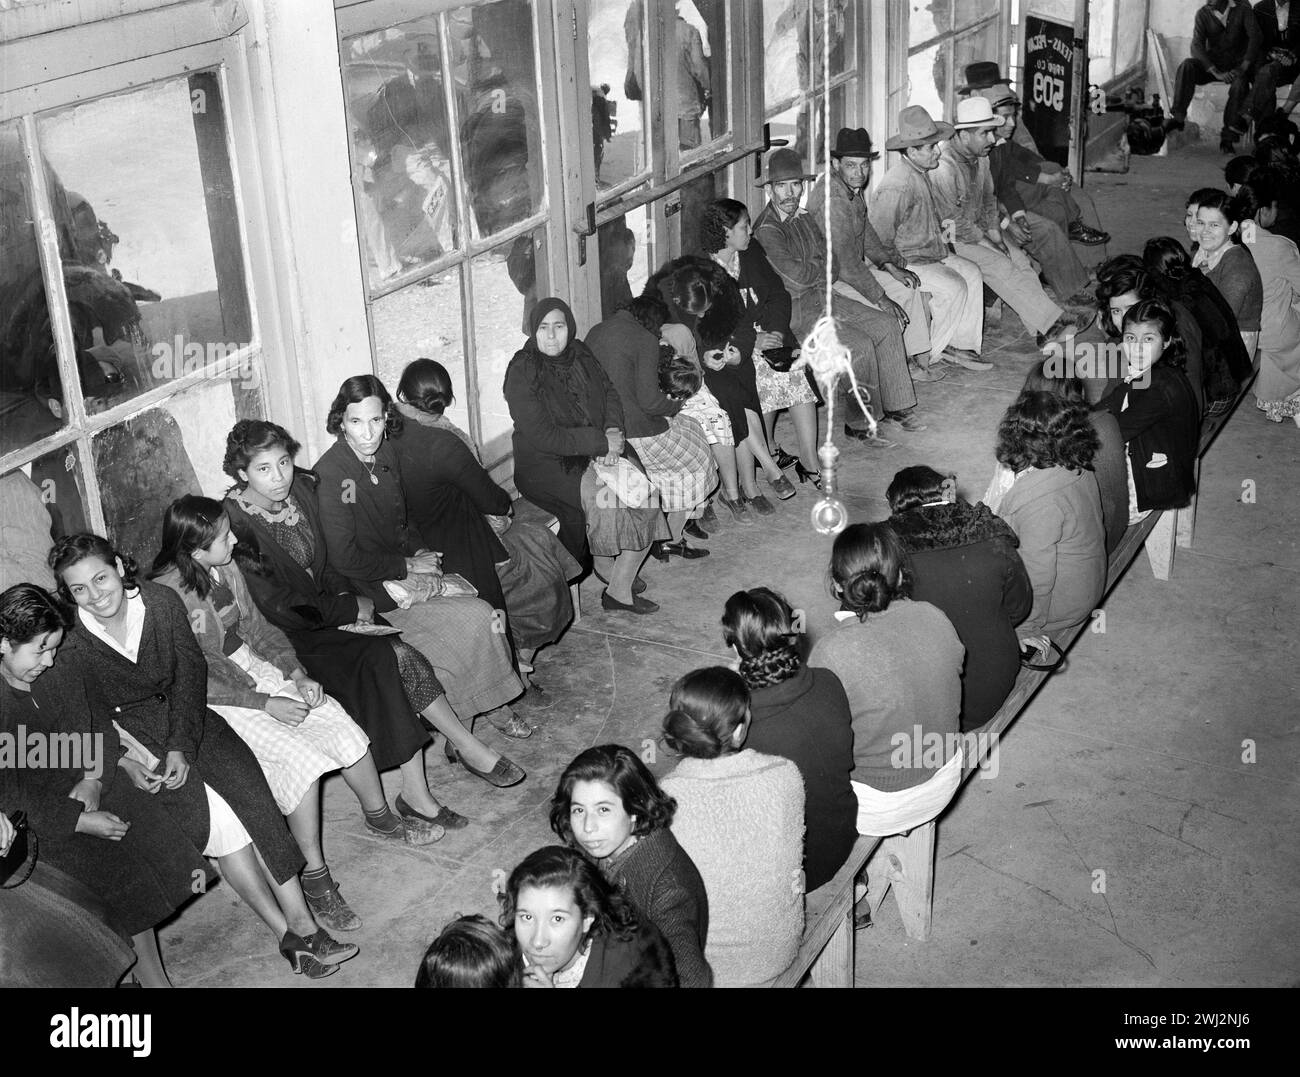 Mexikanische Pekannarbeiter warten in der gewerkschaftshalle auf die Arbeit. San Antonio, Texas, USA, Russell Lee, U.S. Farm Security Administration, März 1939 Stockfoto